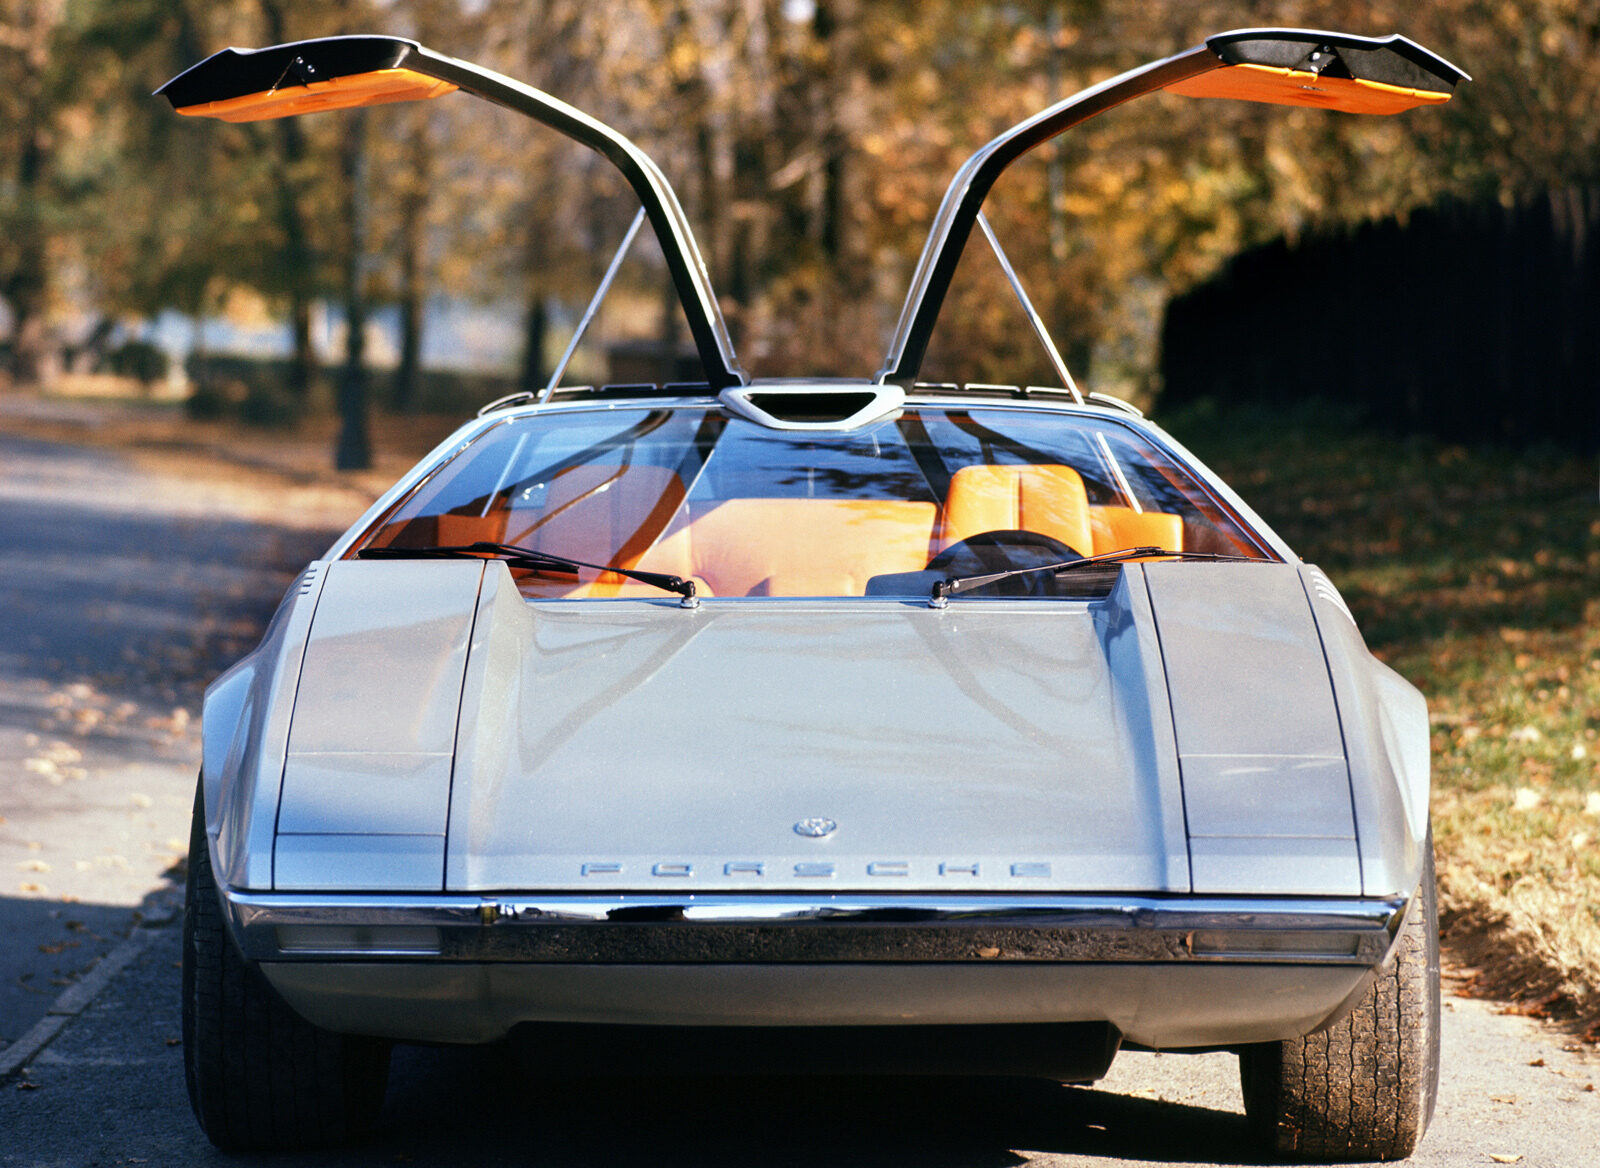 Porsche Of The Day: 1970 Porsche Tapiro Concept